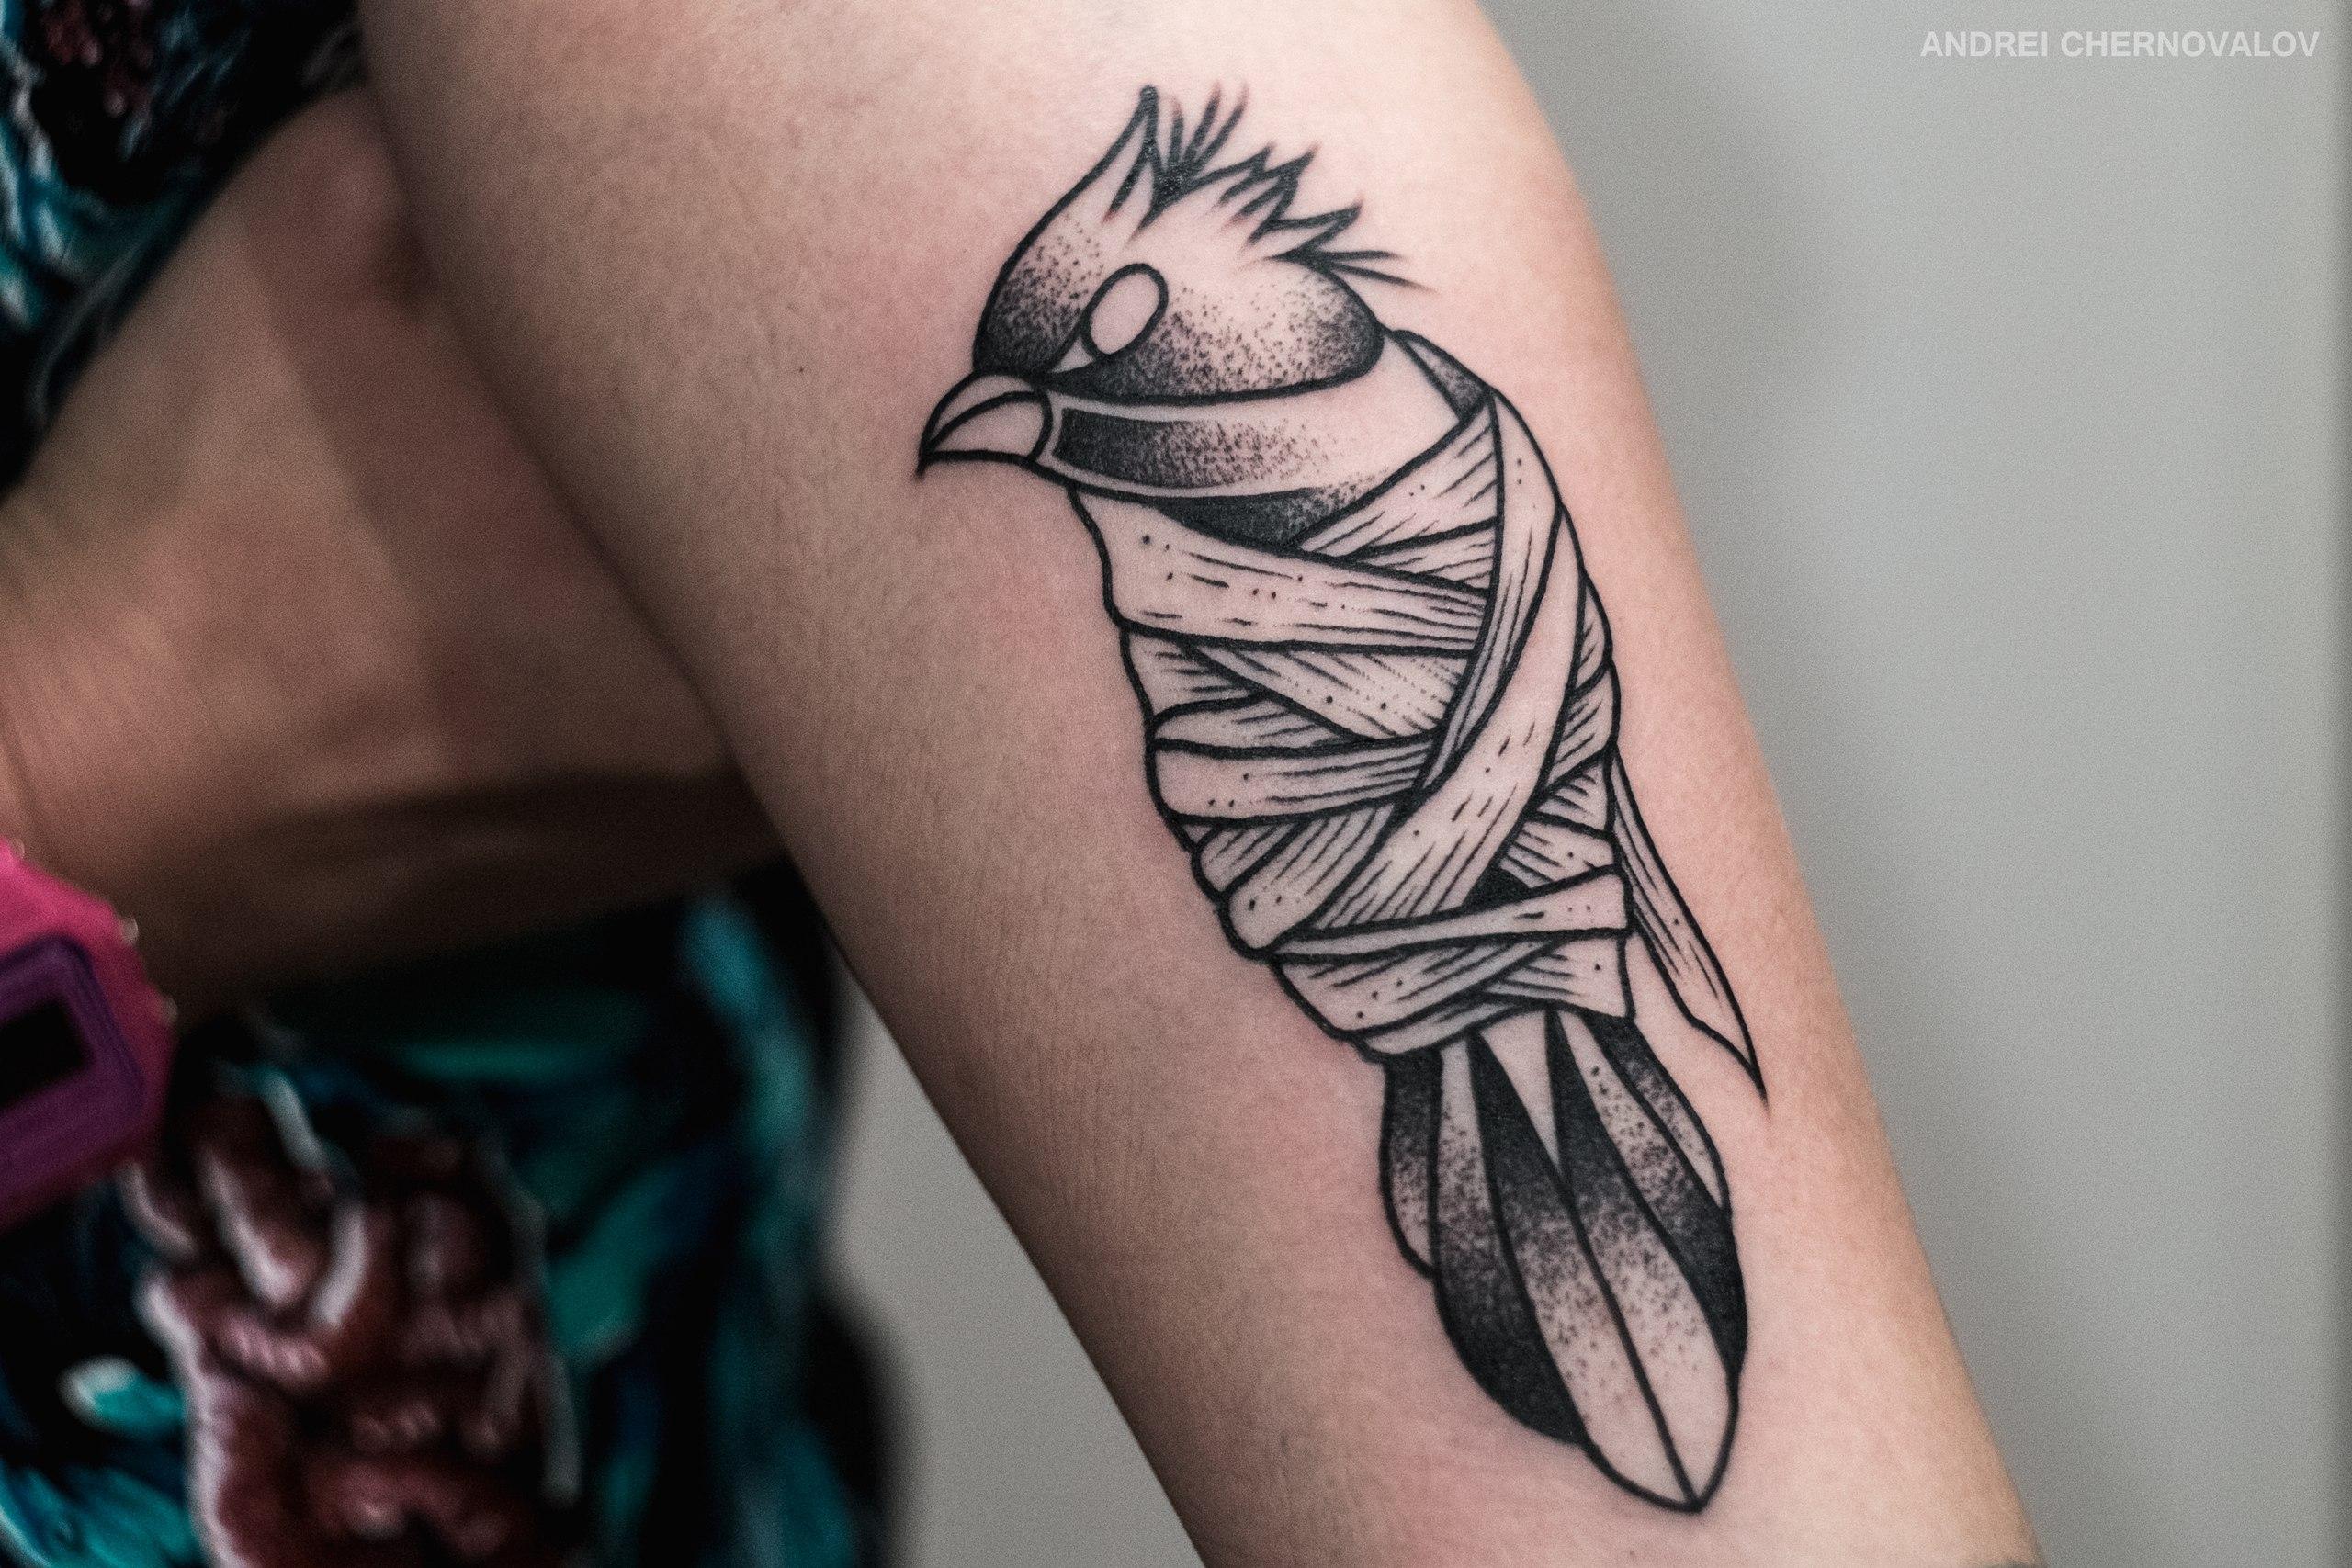 Художественная татуировка «Птица». Мастер — Андрей Черновалов.